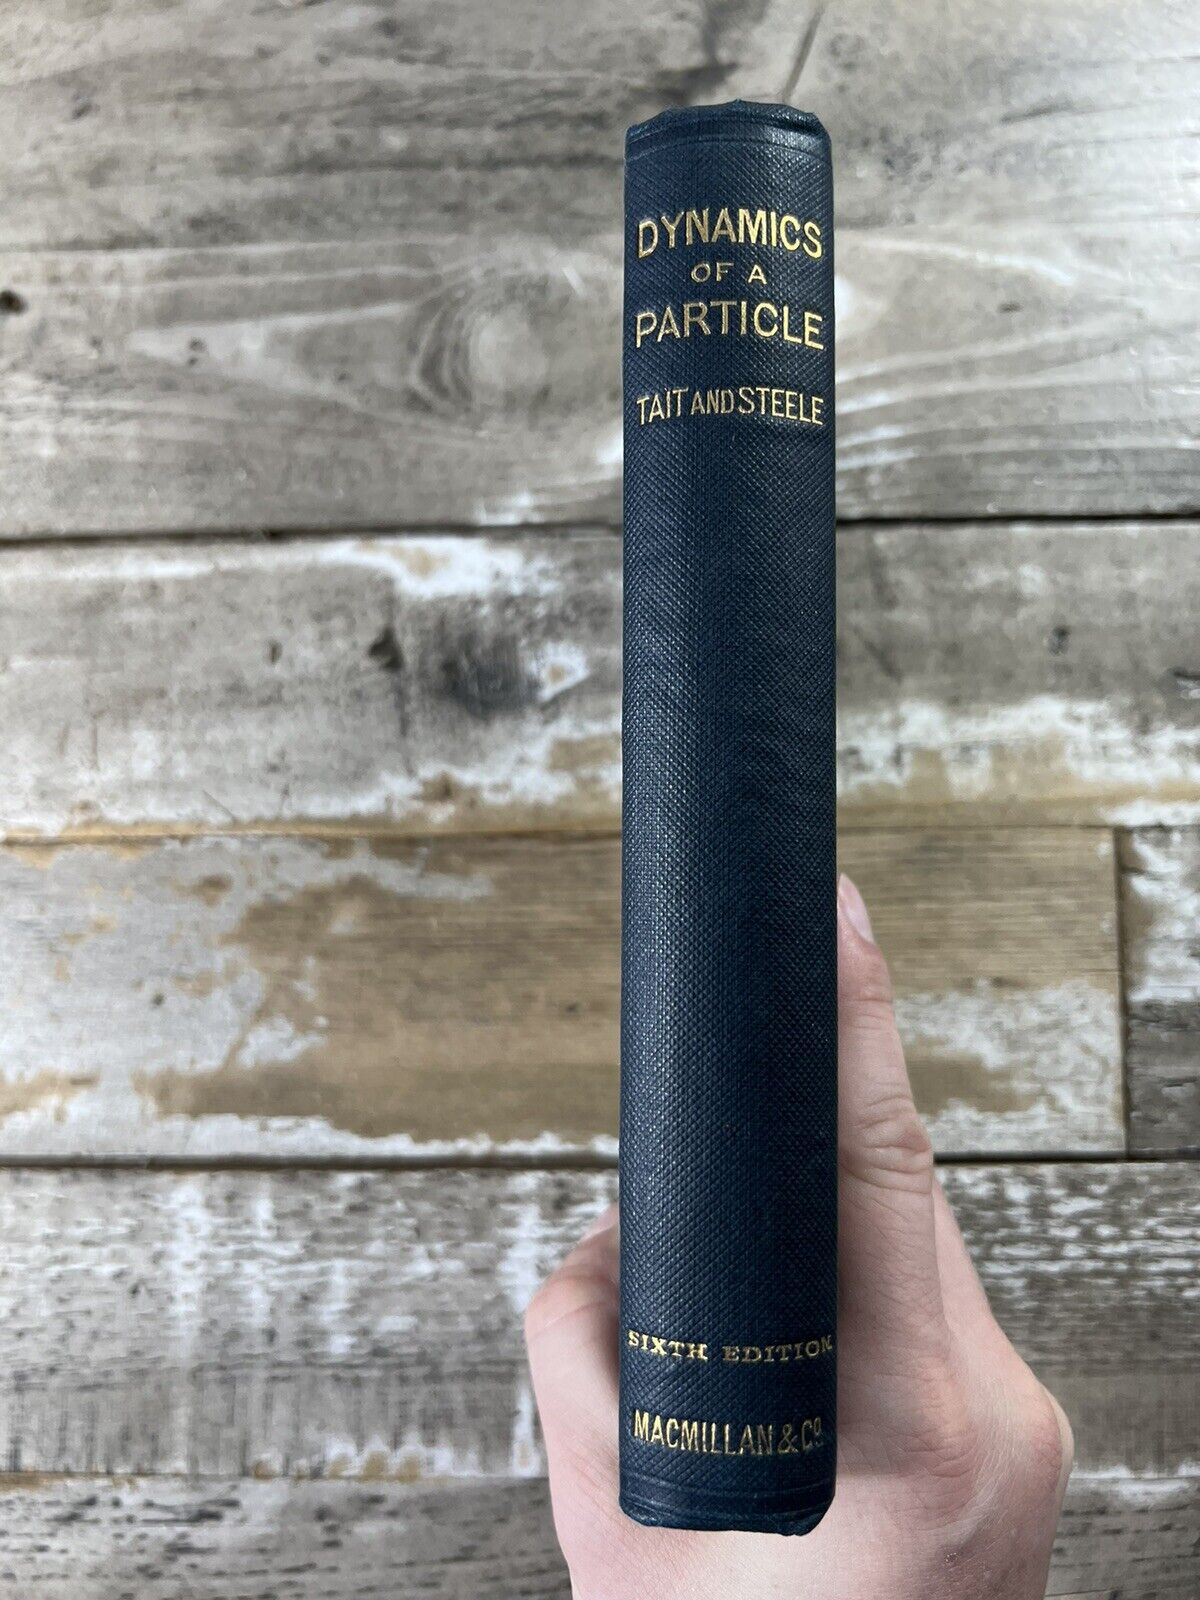 1889 Antique Physics Book \